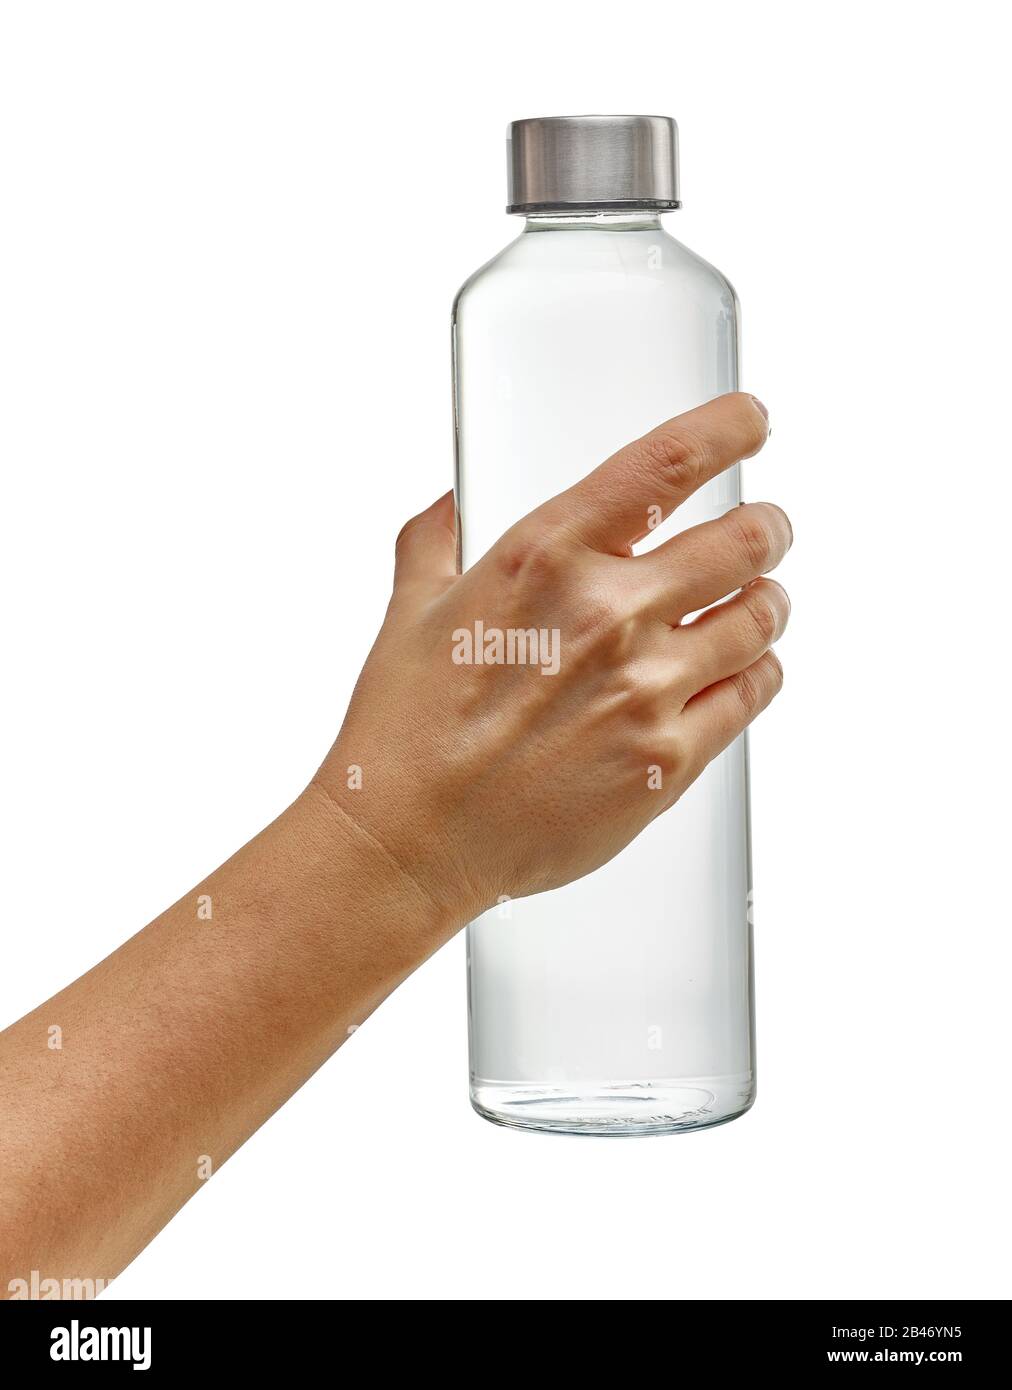 Flacon en verre réutilisable à main avec eau potable isolée sur fond blanc Banque D'Images